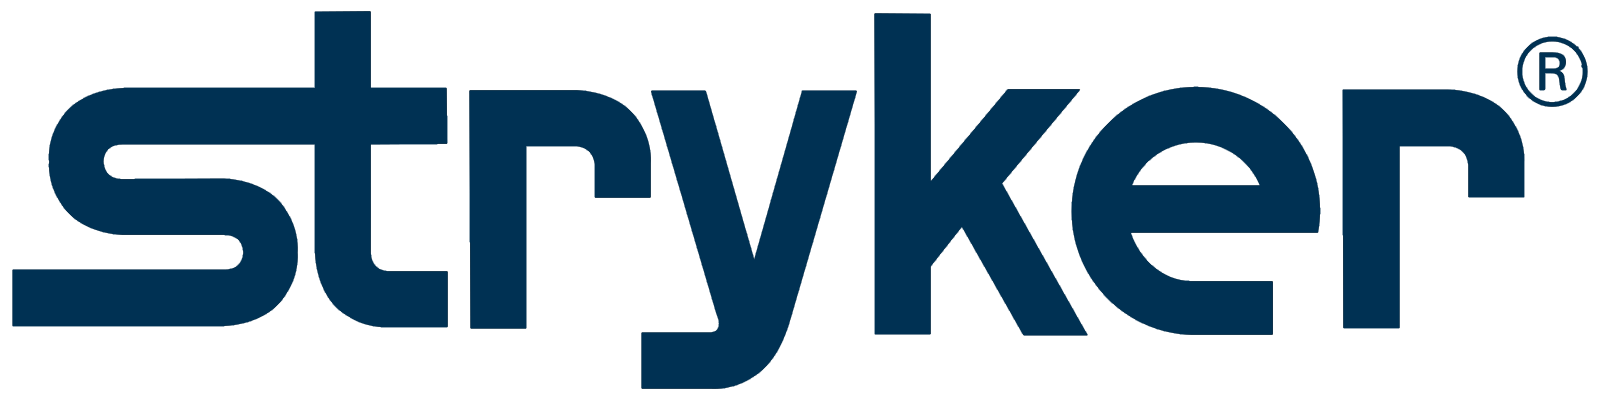 Stryker_Corporation_logo.svg